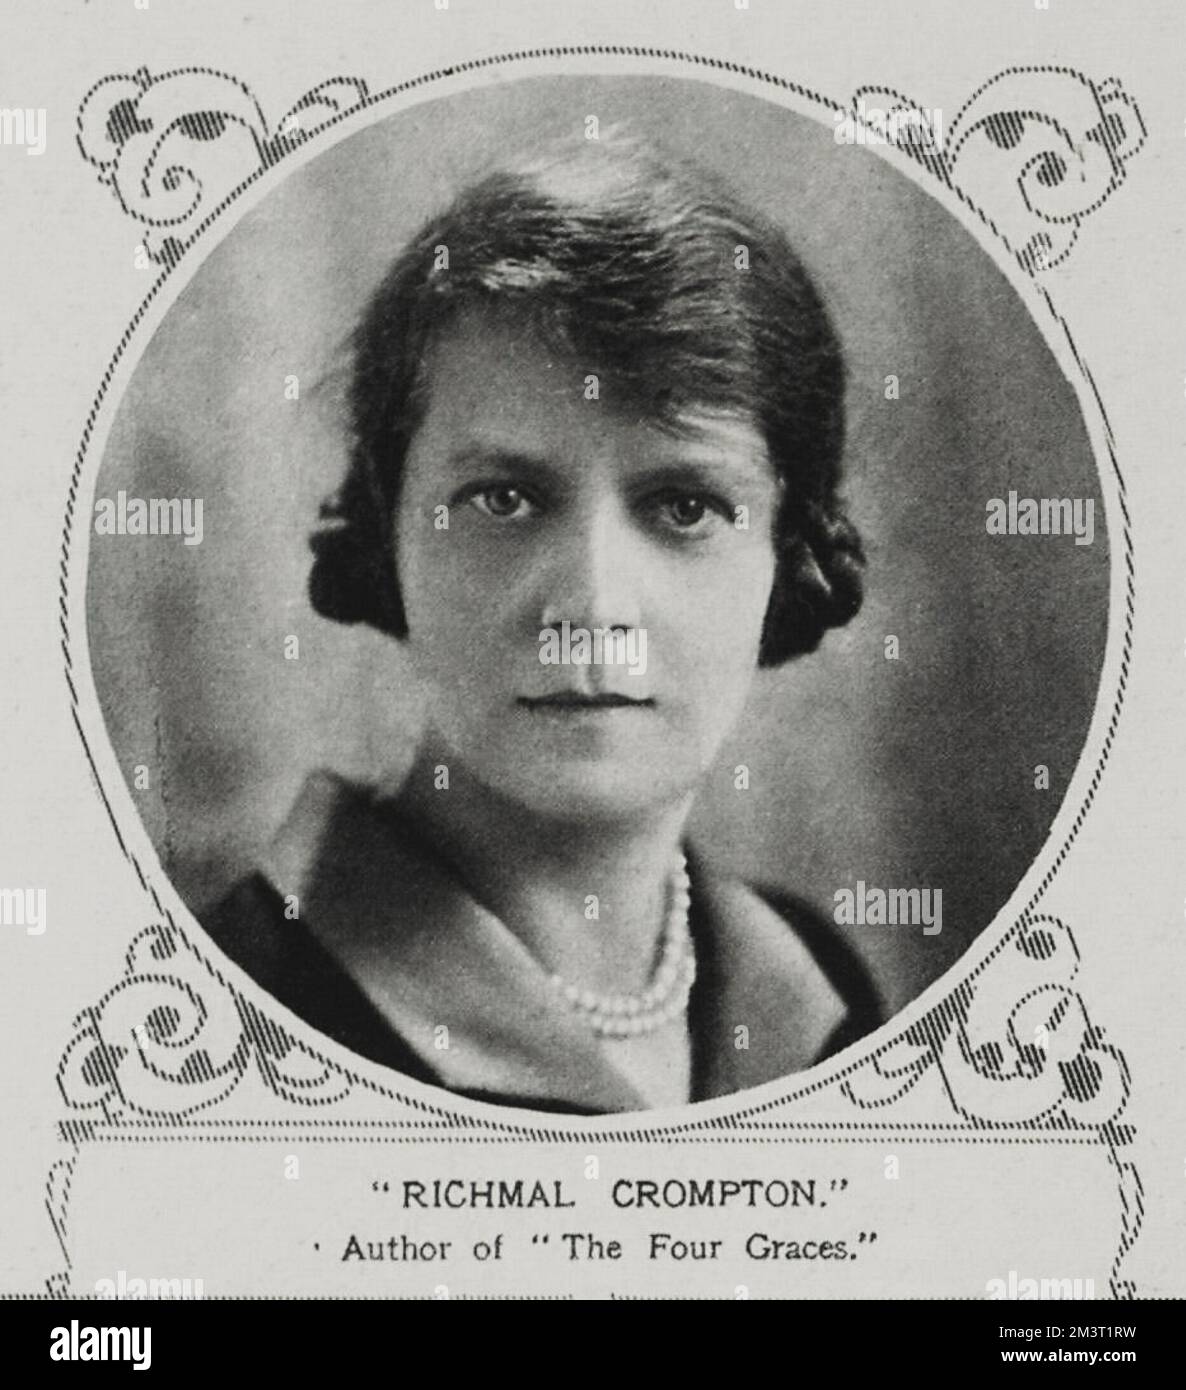 Richmal Crompton (1890 - 1969), englische Schriftstellerin, bekannt für ihre Just William-Serie von Kinderbüchern. In den illustrierten London News zu dem Zeitpunkt, als ihr Buch "die vier Graces" veröffentlicht wurde. Stockfoto